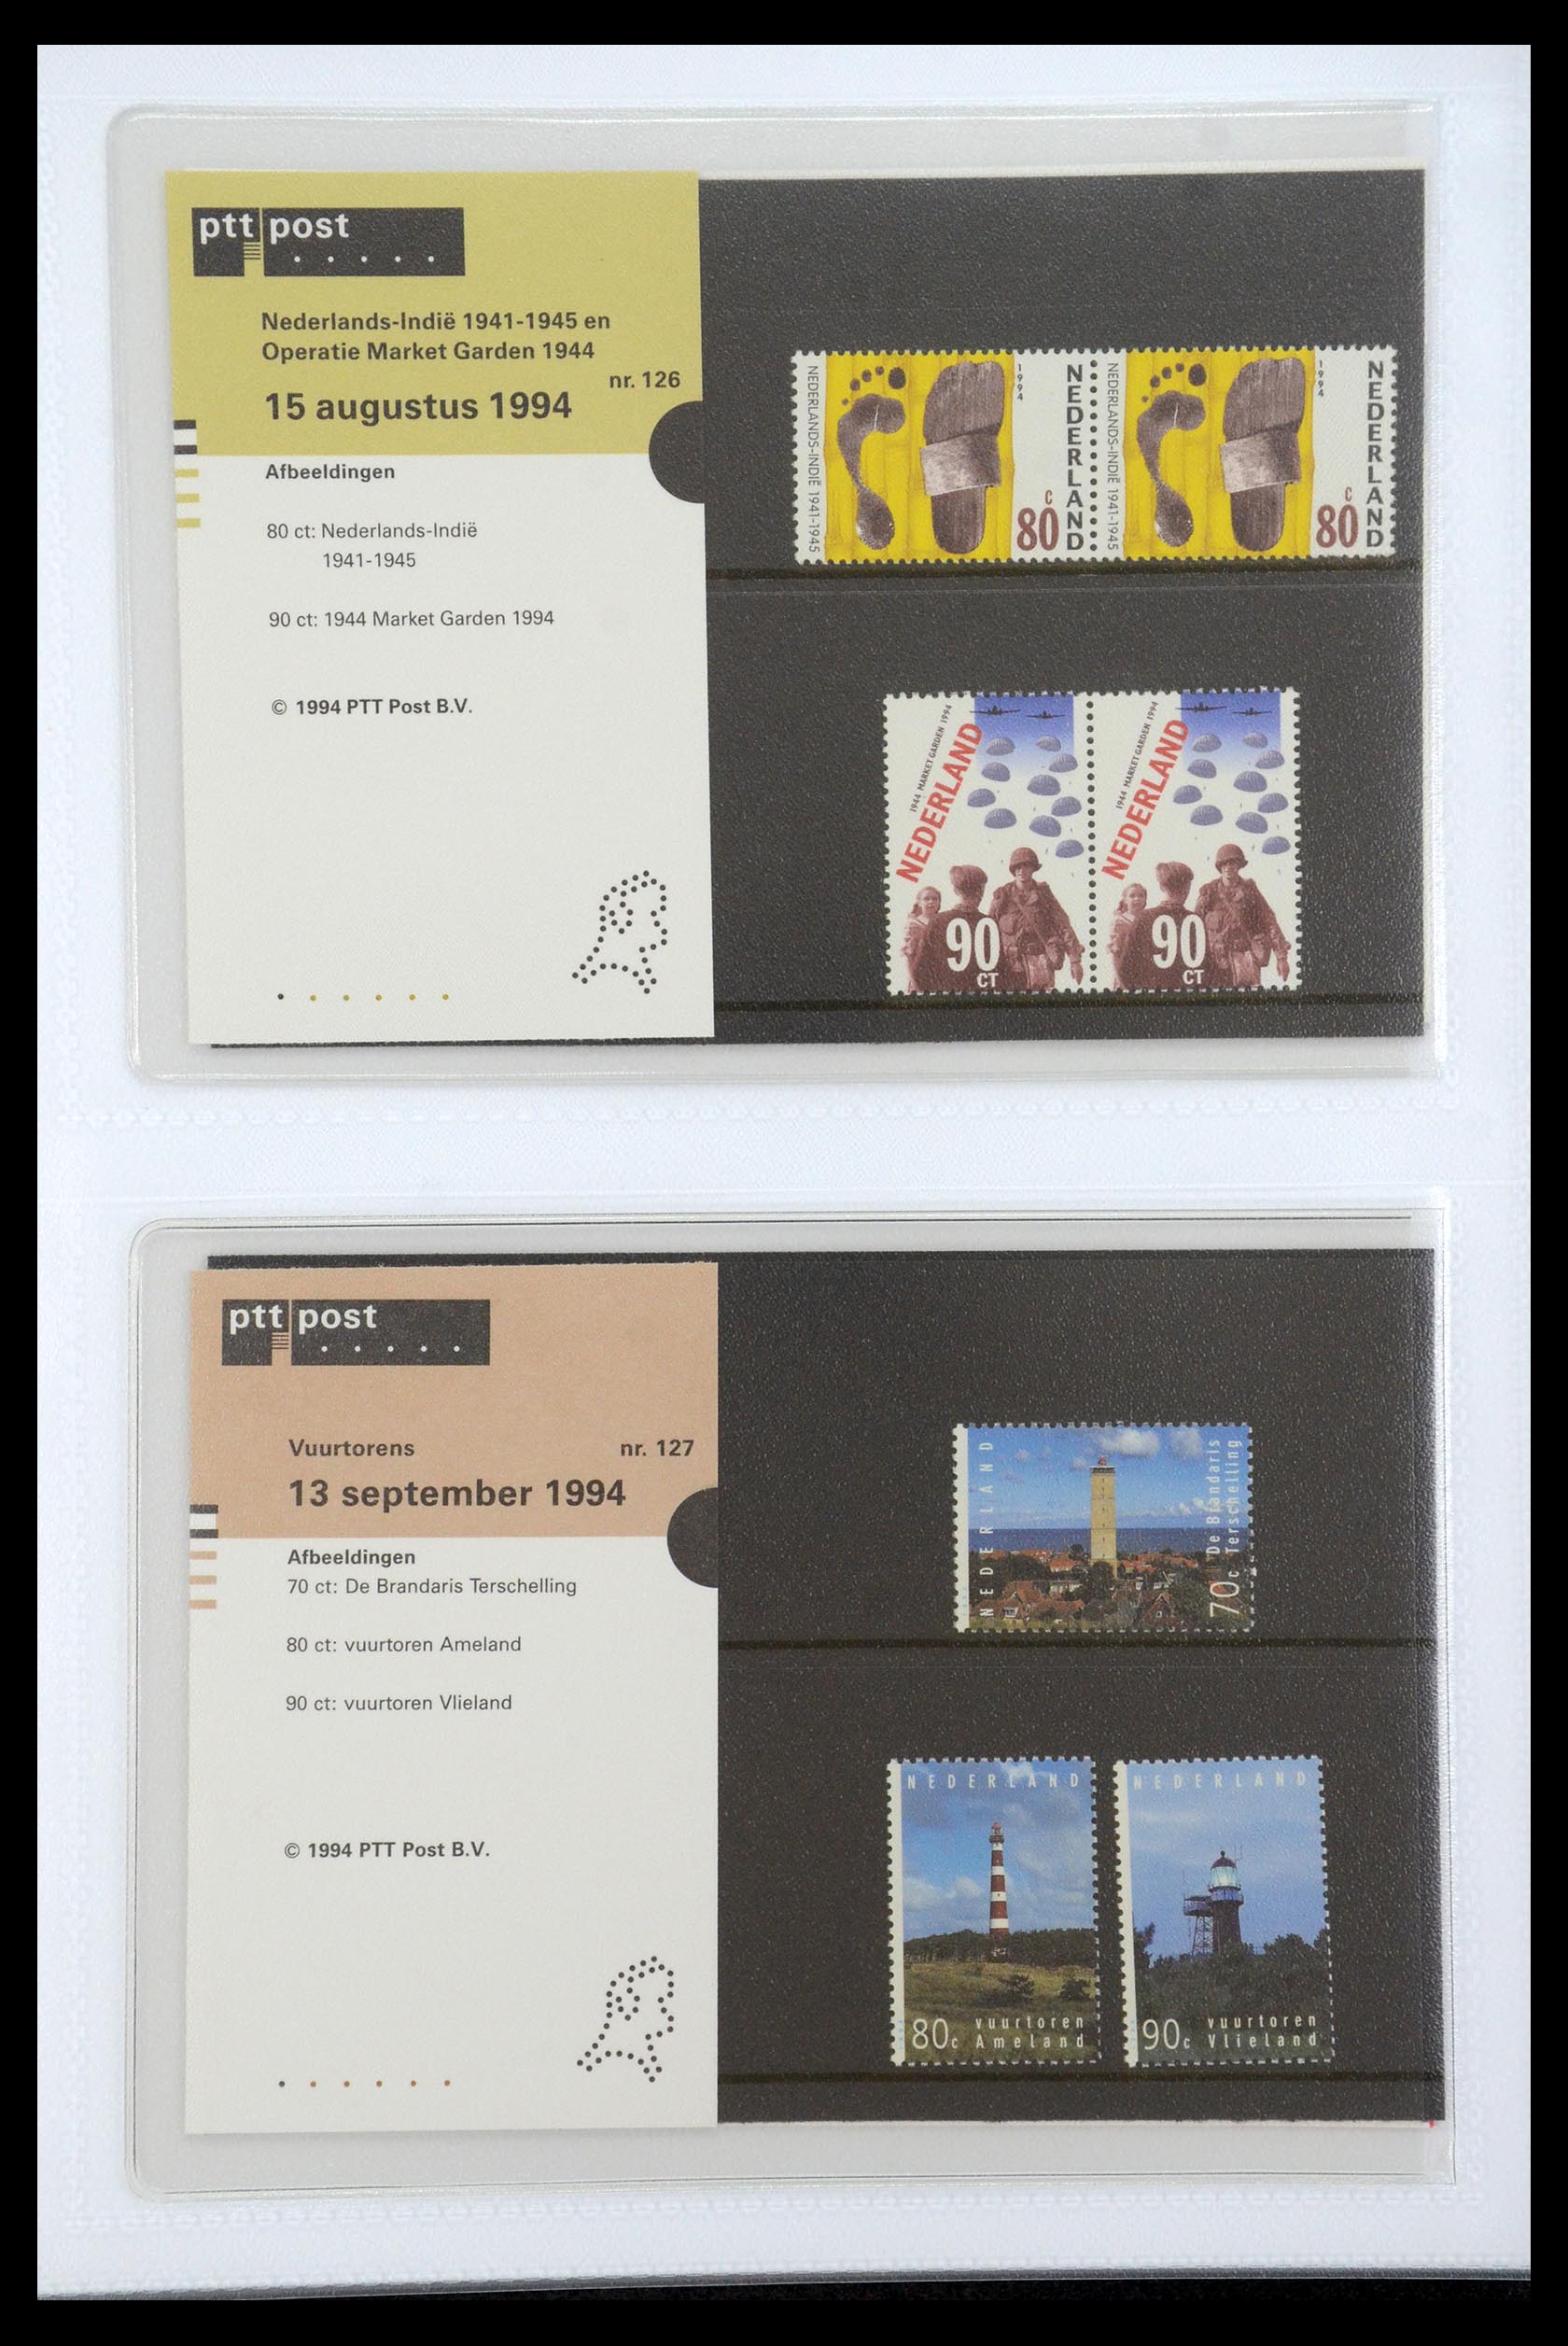 35947 066 - Stamp Collection 35947 Netherlands PTT presentation packs 1982-2019!